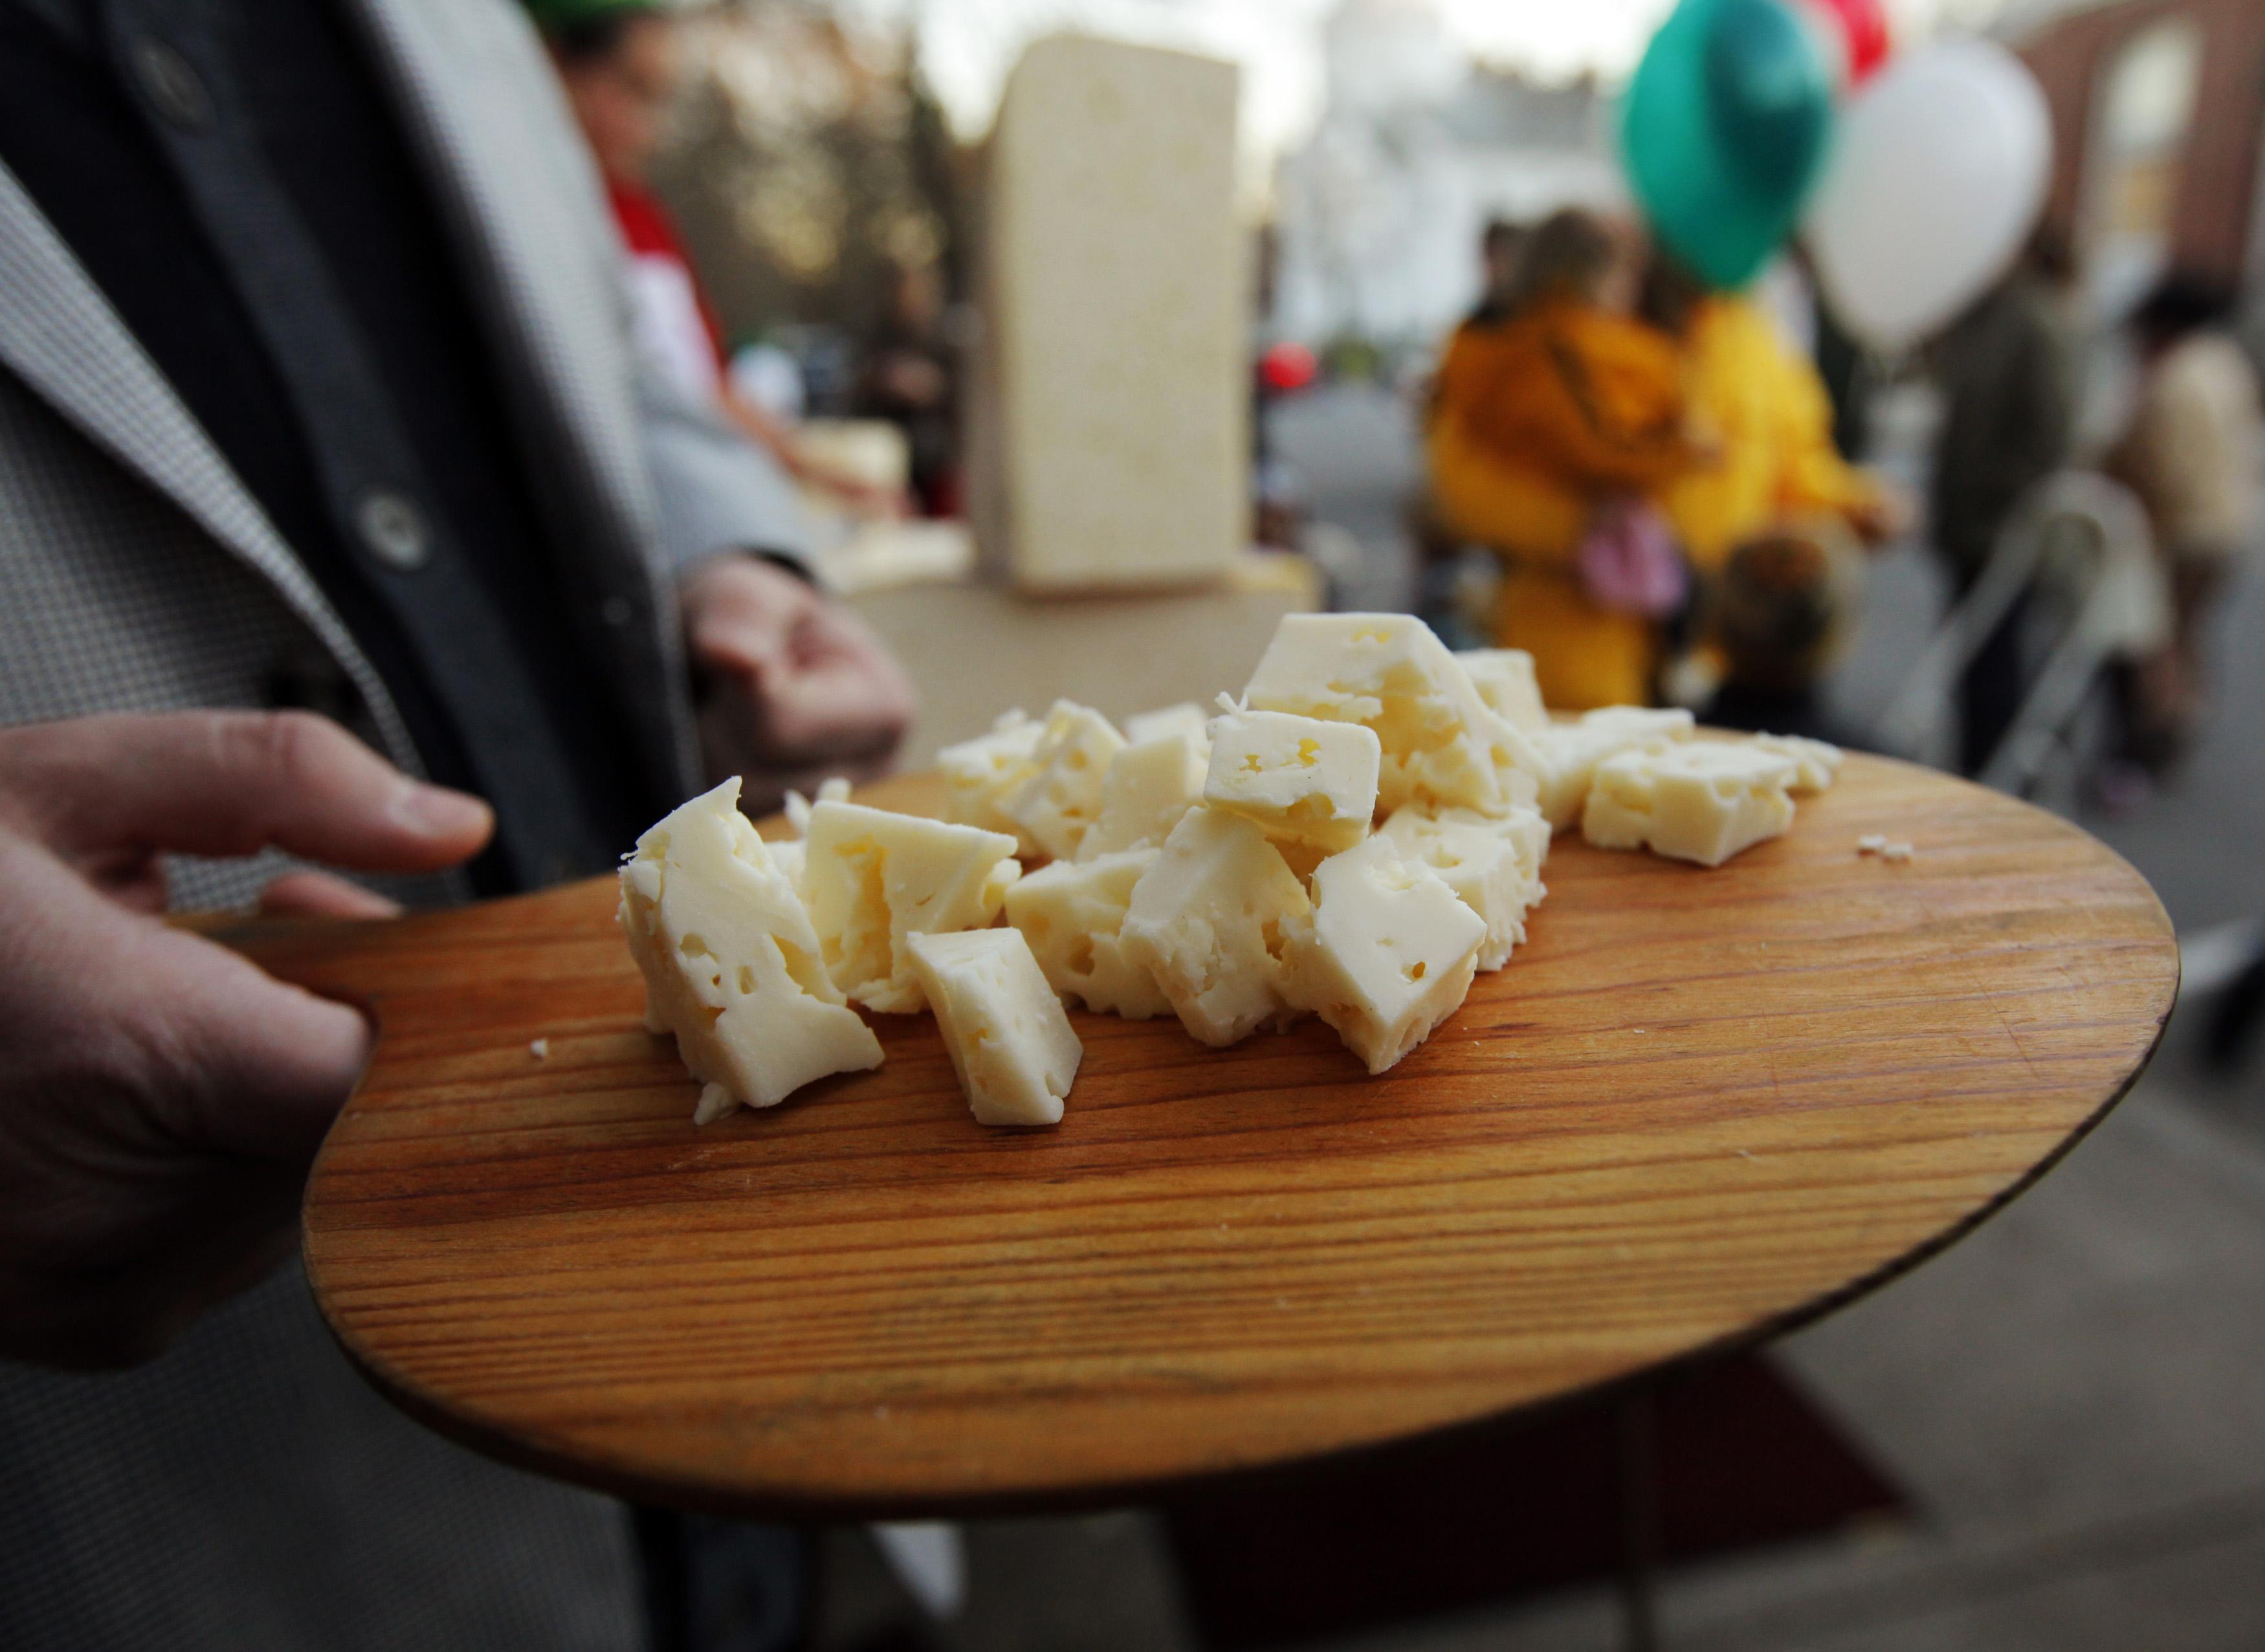 Egy eredetileg az észak-olaszországi Trentinóból származó sajtfajta, a crucolo egyik 180 kilogrammos darabjának a kóstolója 2011-ben a massachusettsi Concordban. A jelképeket is el kell tüntetni